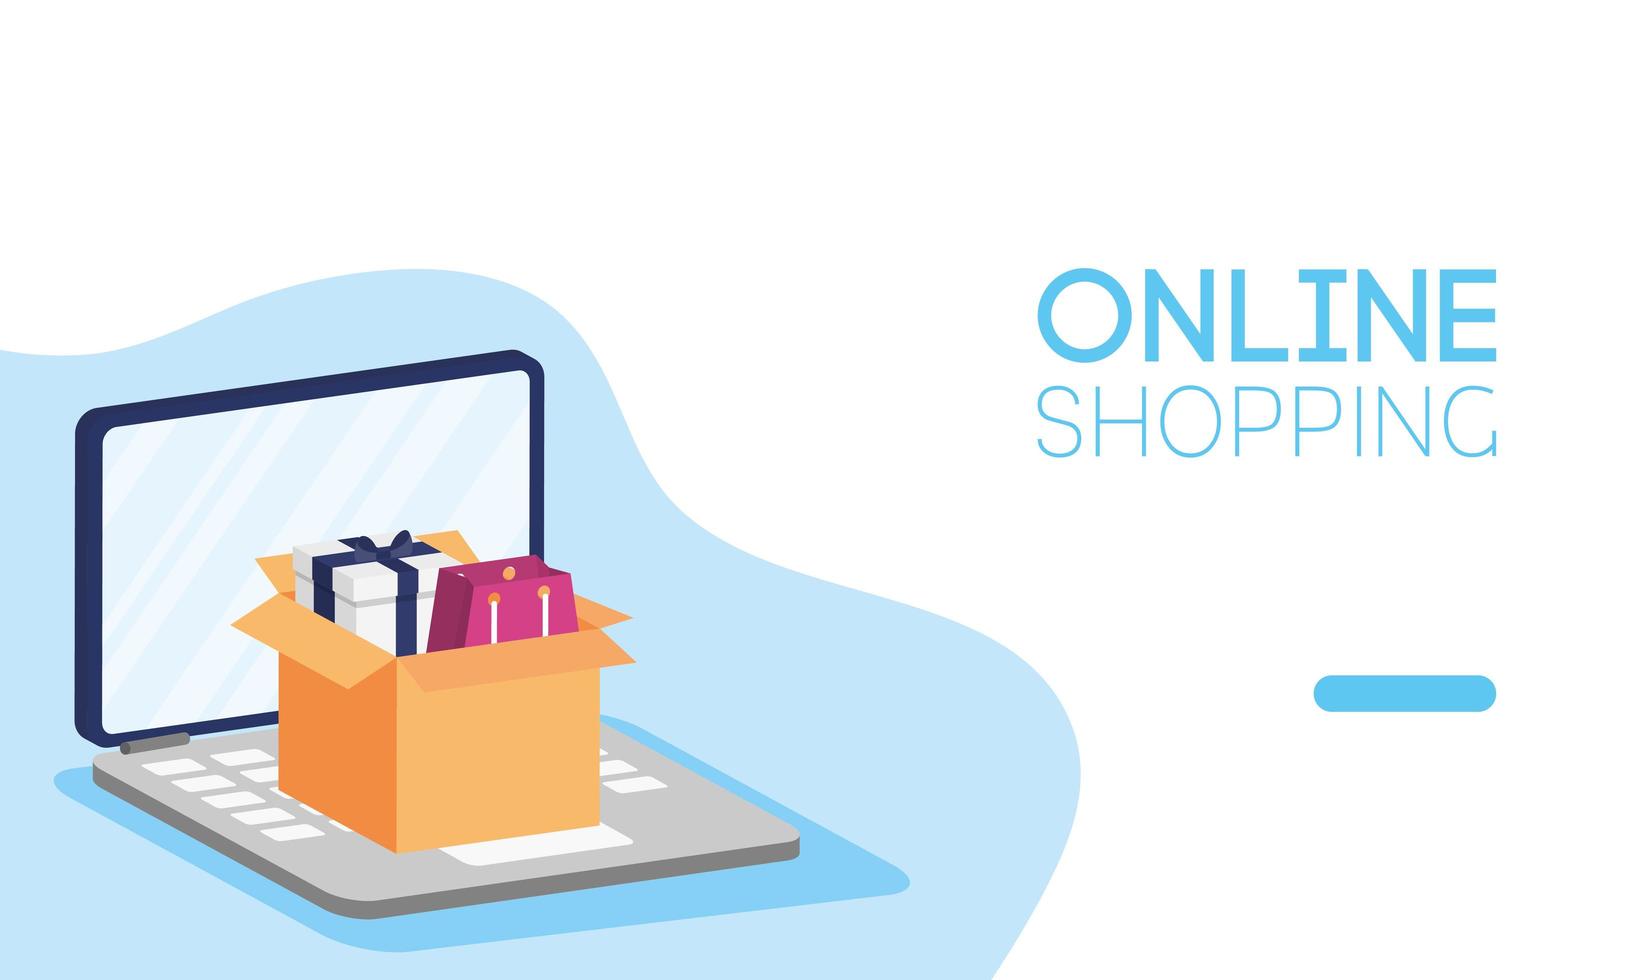 online shopping och e-handelsbanner vektor